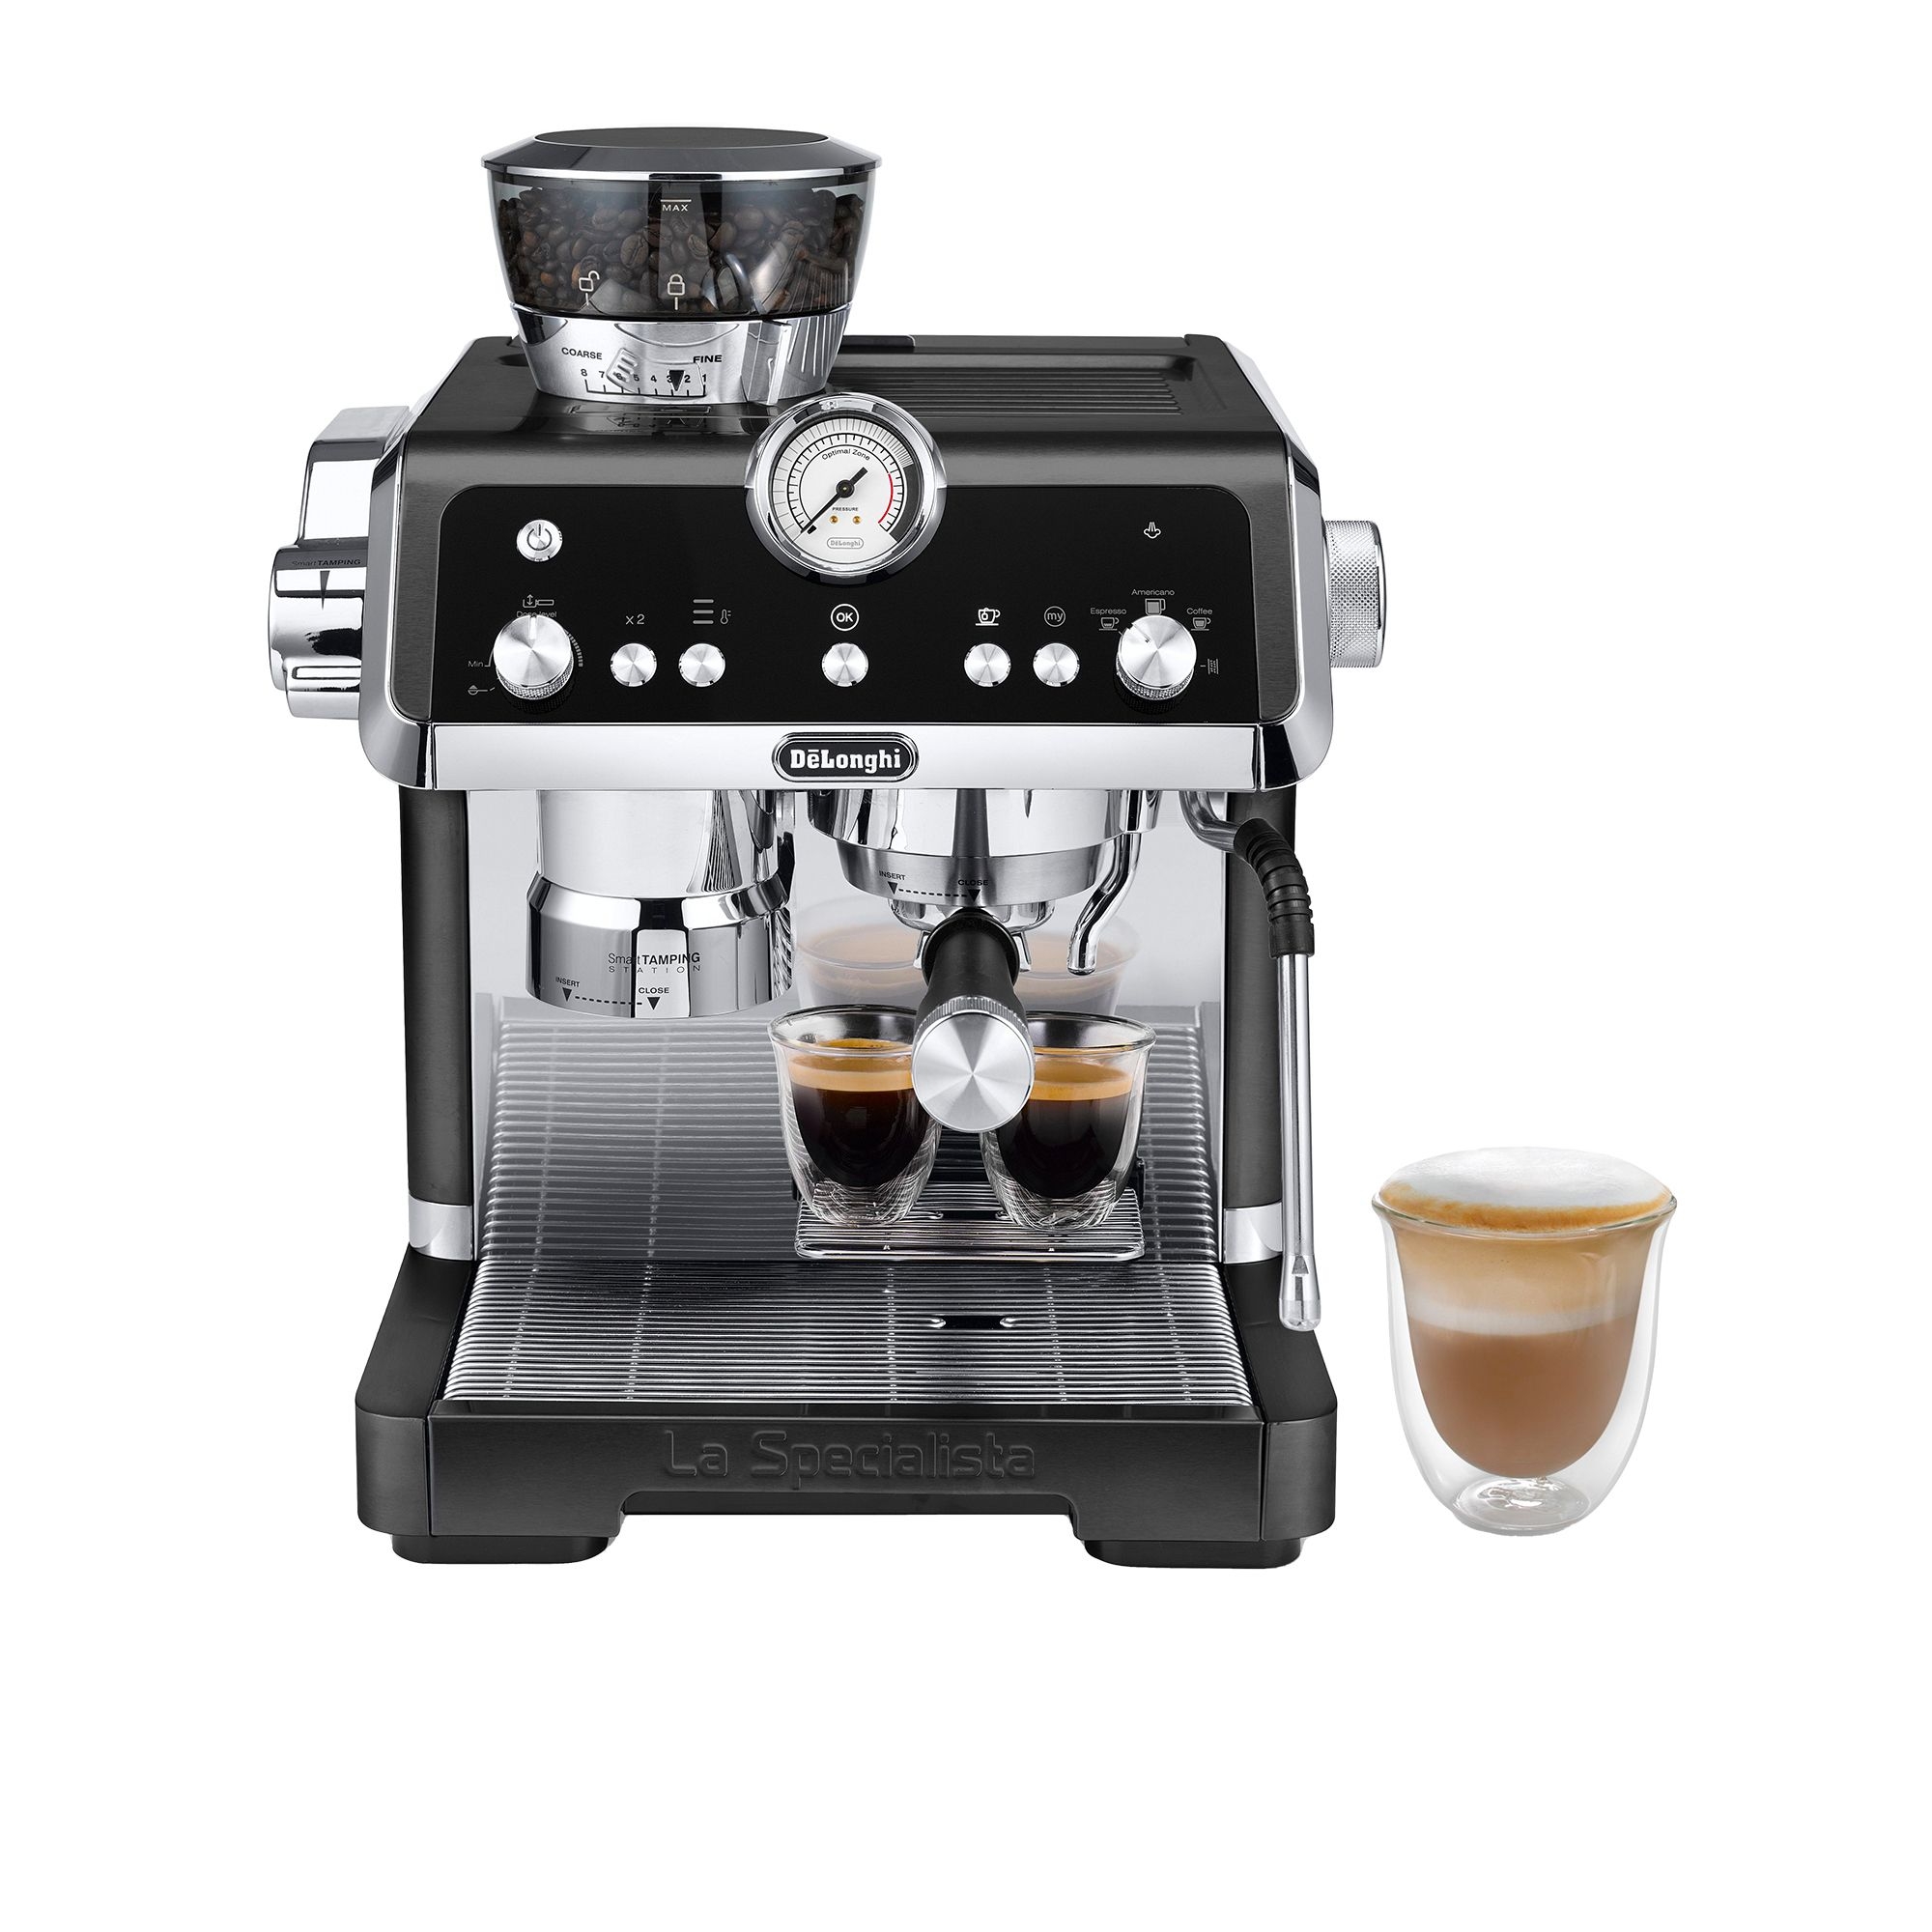 DeLonghi LaSpecialista Prestigio EC9355BM Coffee Machine Matte Black Image 1